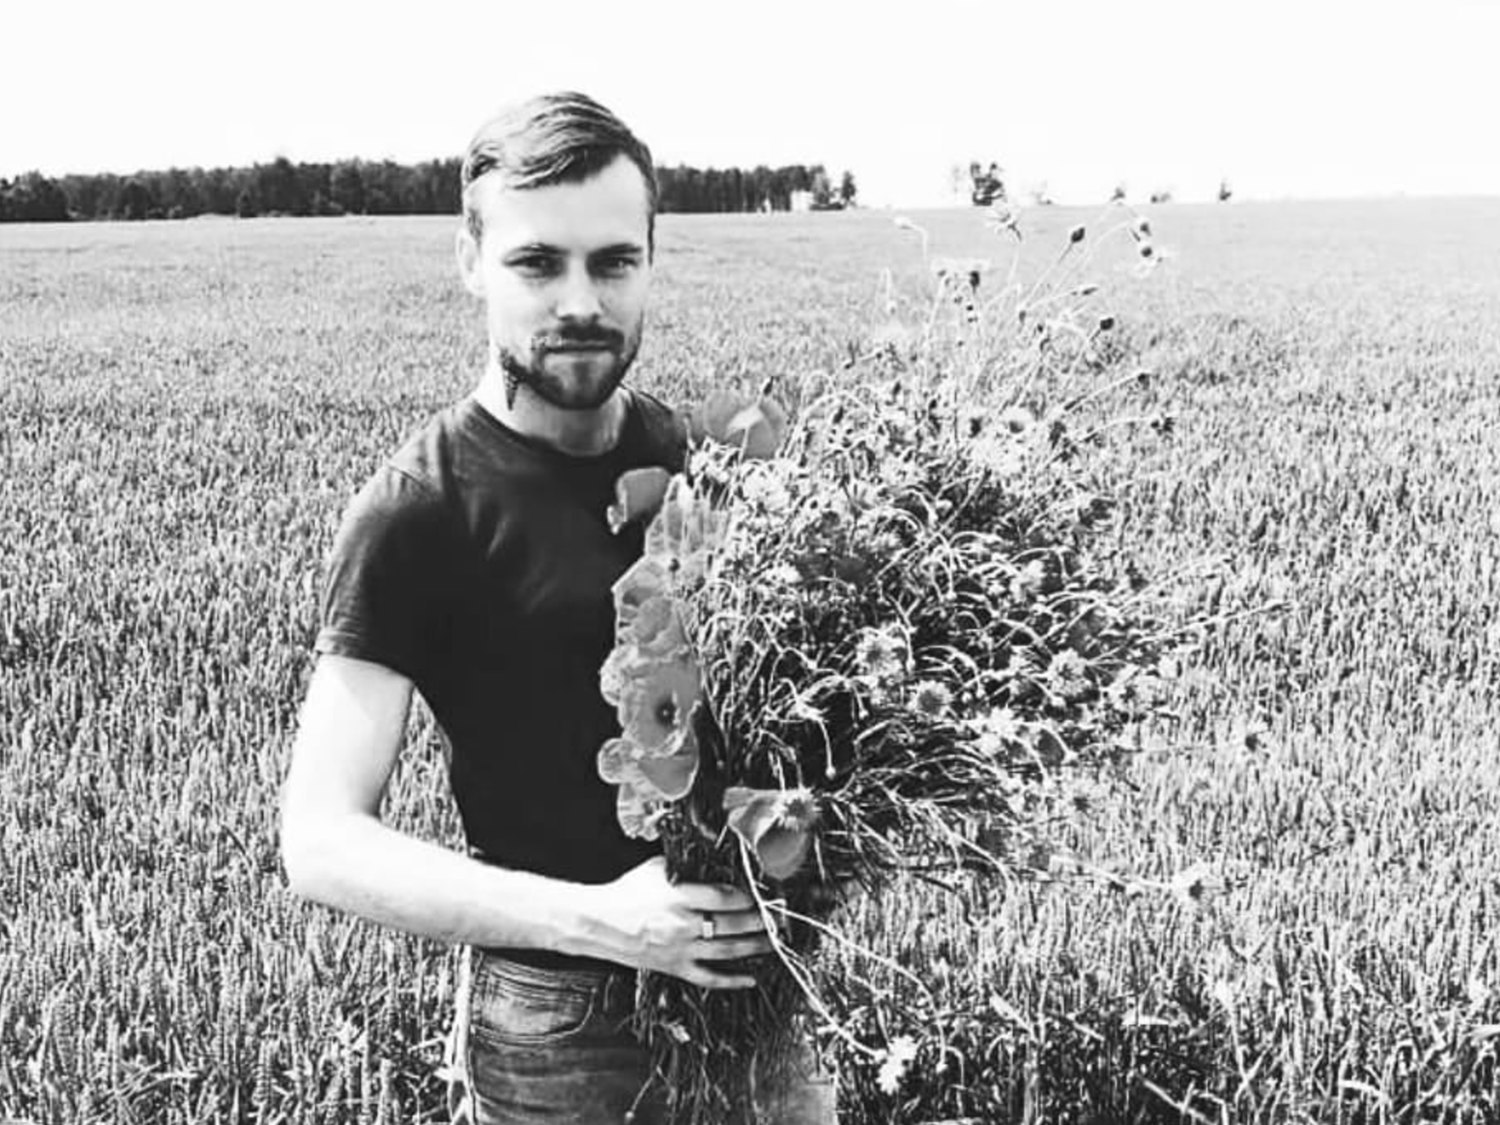 Queman y asesinan brutalmente al activista LGTBI Normunds Kinzulis, de 29 años, en Letonia